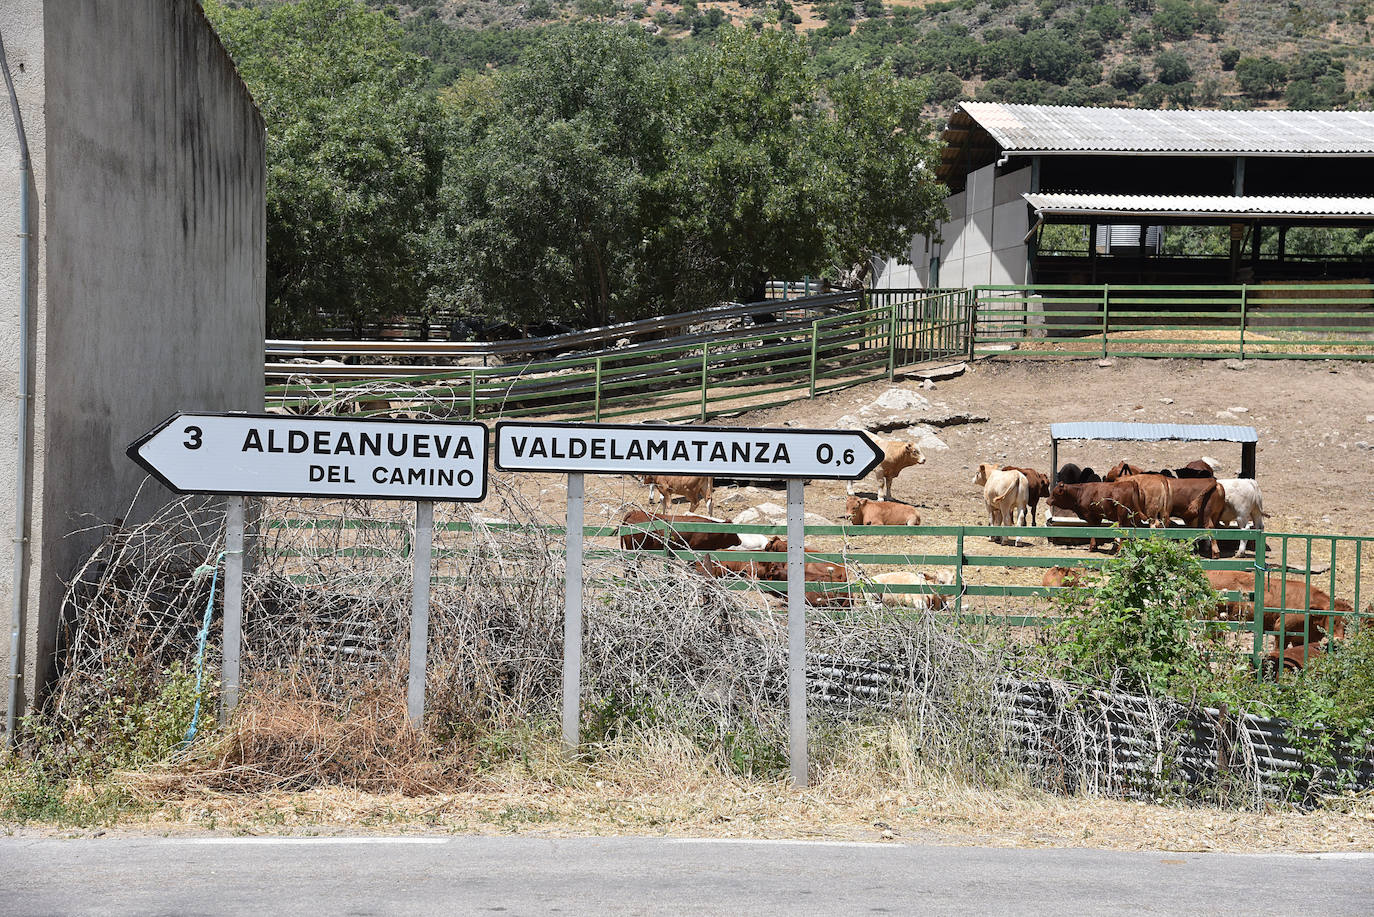 Valdelamatanza (157 vecinos) está al sur de la provincia de Salamanca, casi tocando a la de Cáceres. La localidad más cercana es extremeña, Aldeanueva del Camino, a tres kilómetros. 